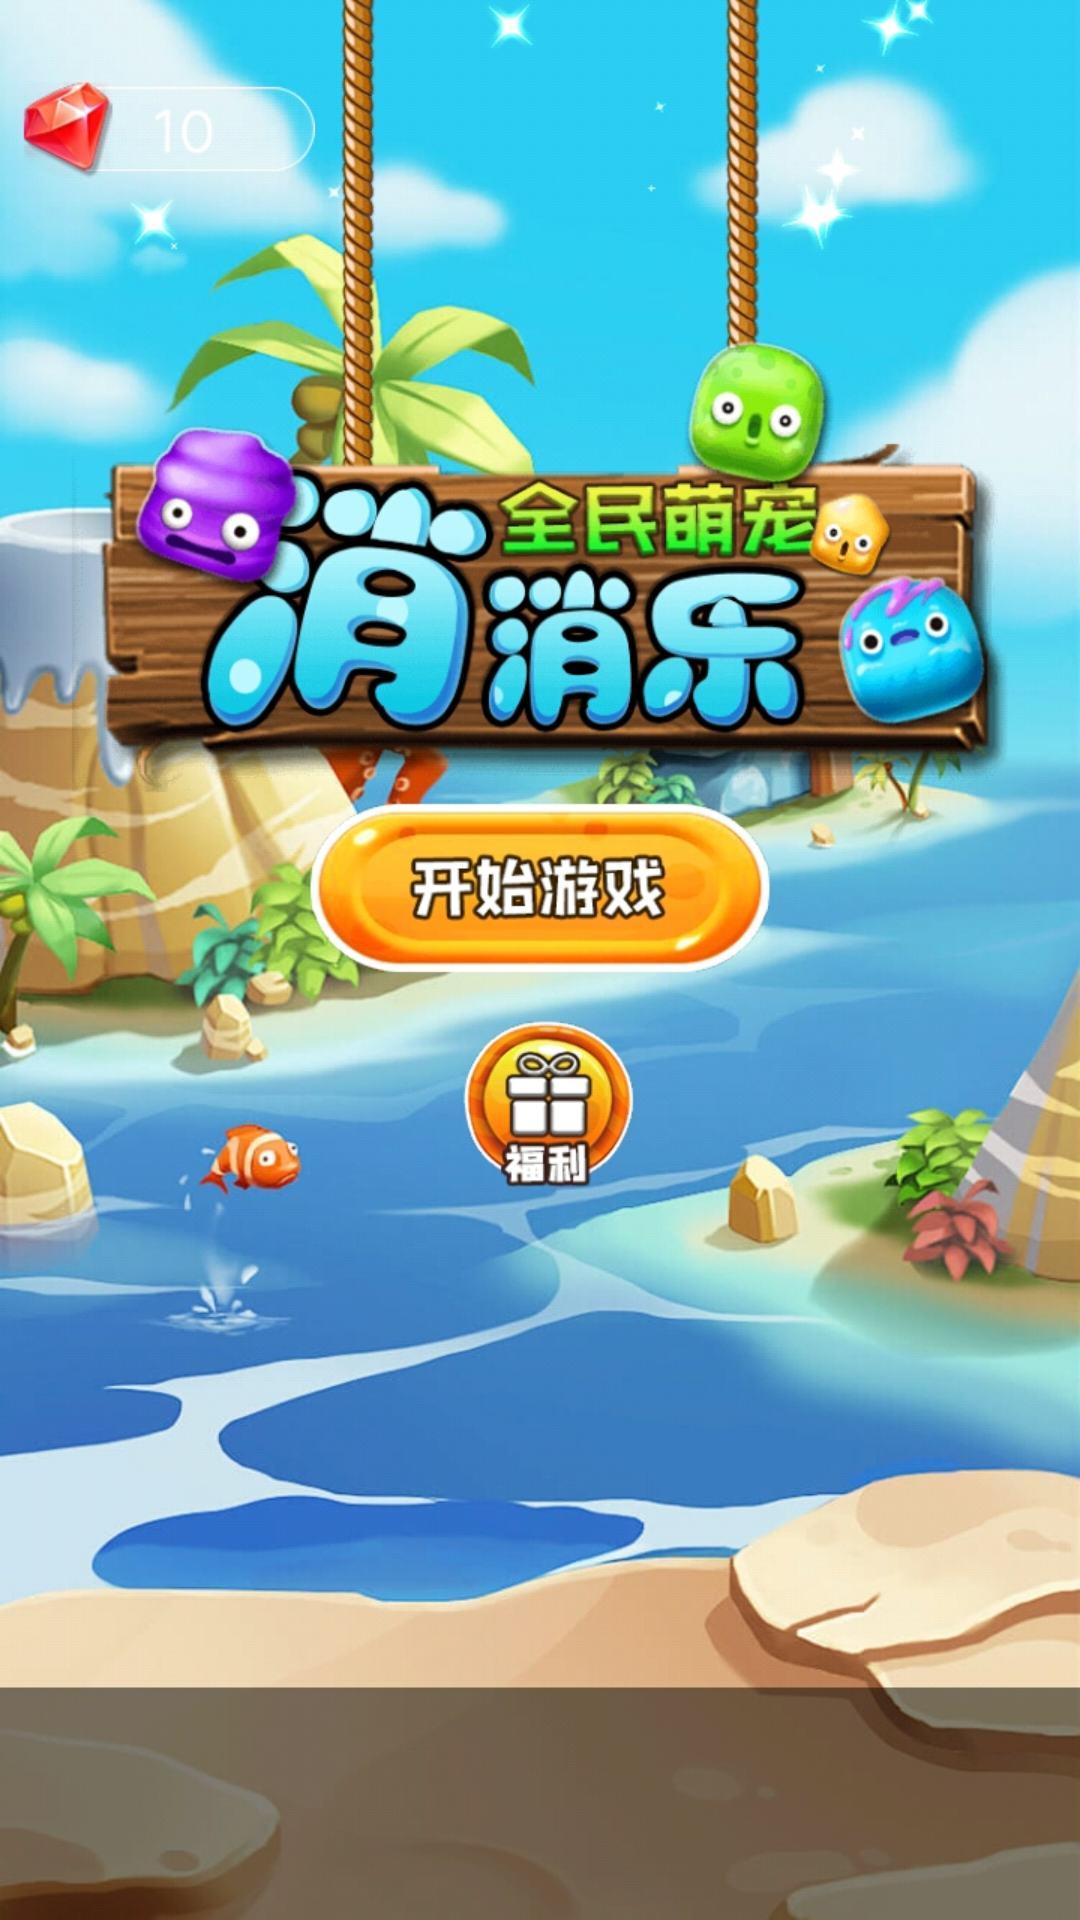 Screenshot 1 of Все милые питомцы Xiaoxiaole 